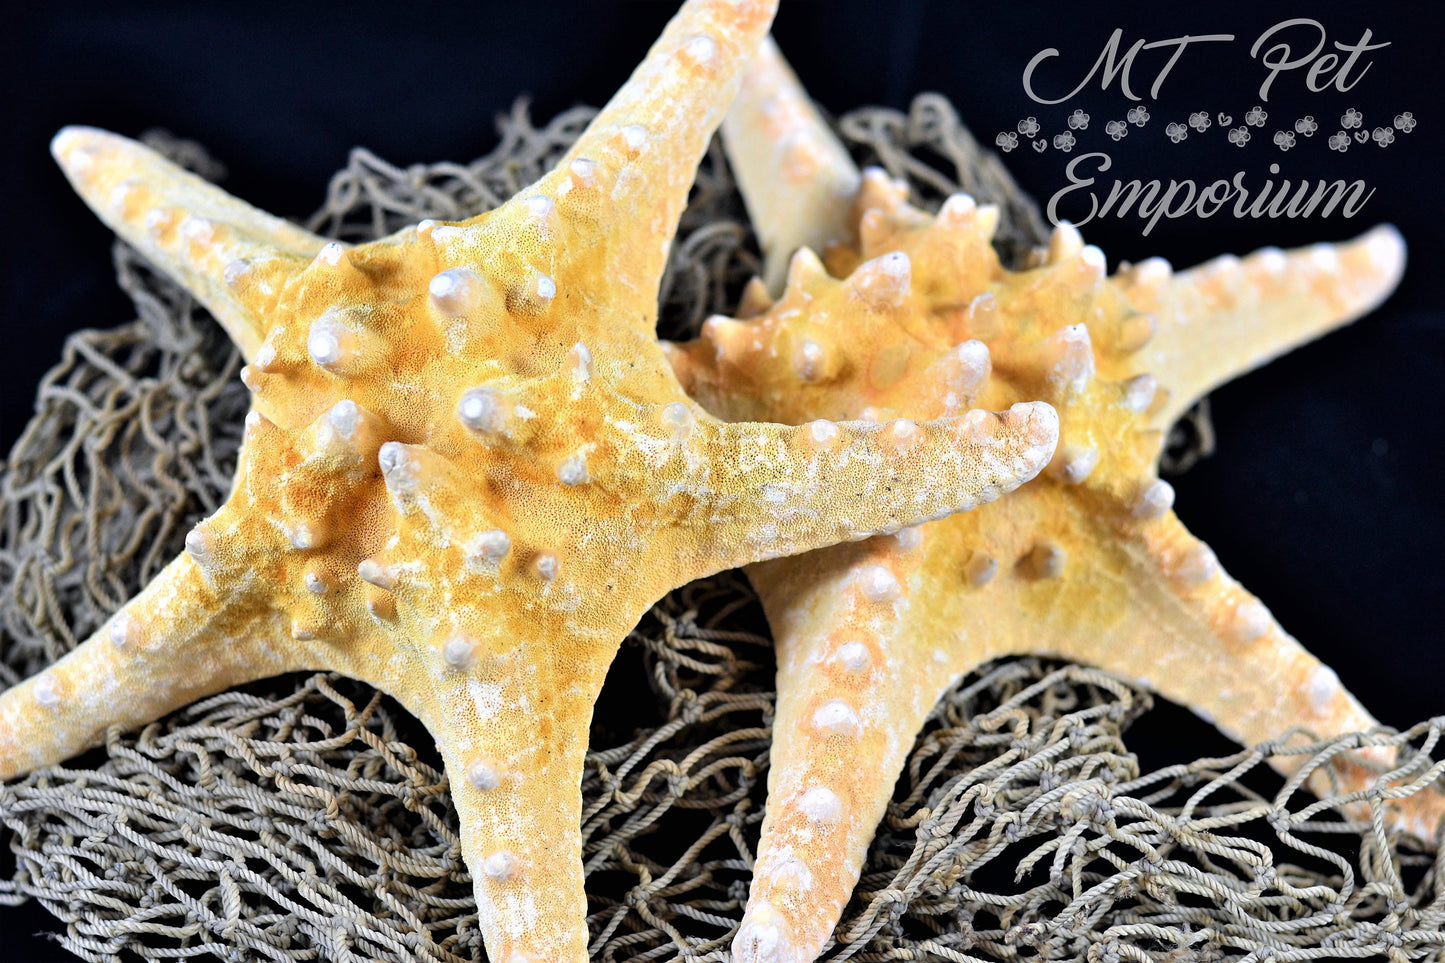 Knobby Starfish - Hermit Crab Food, Home Decor